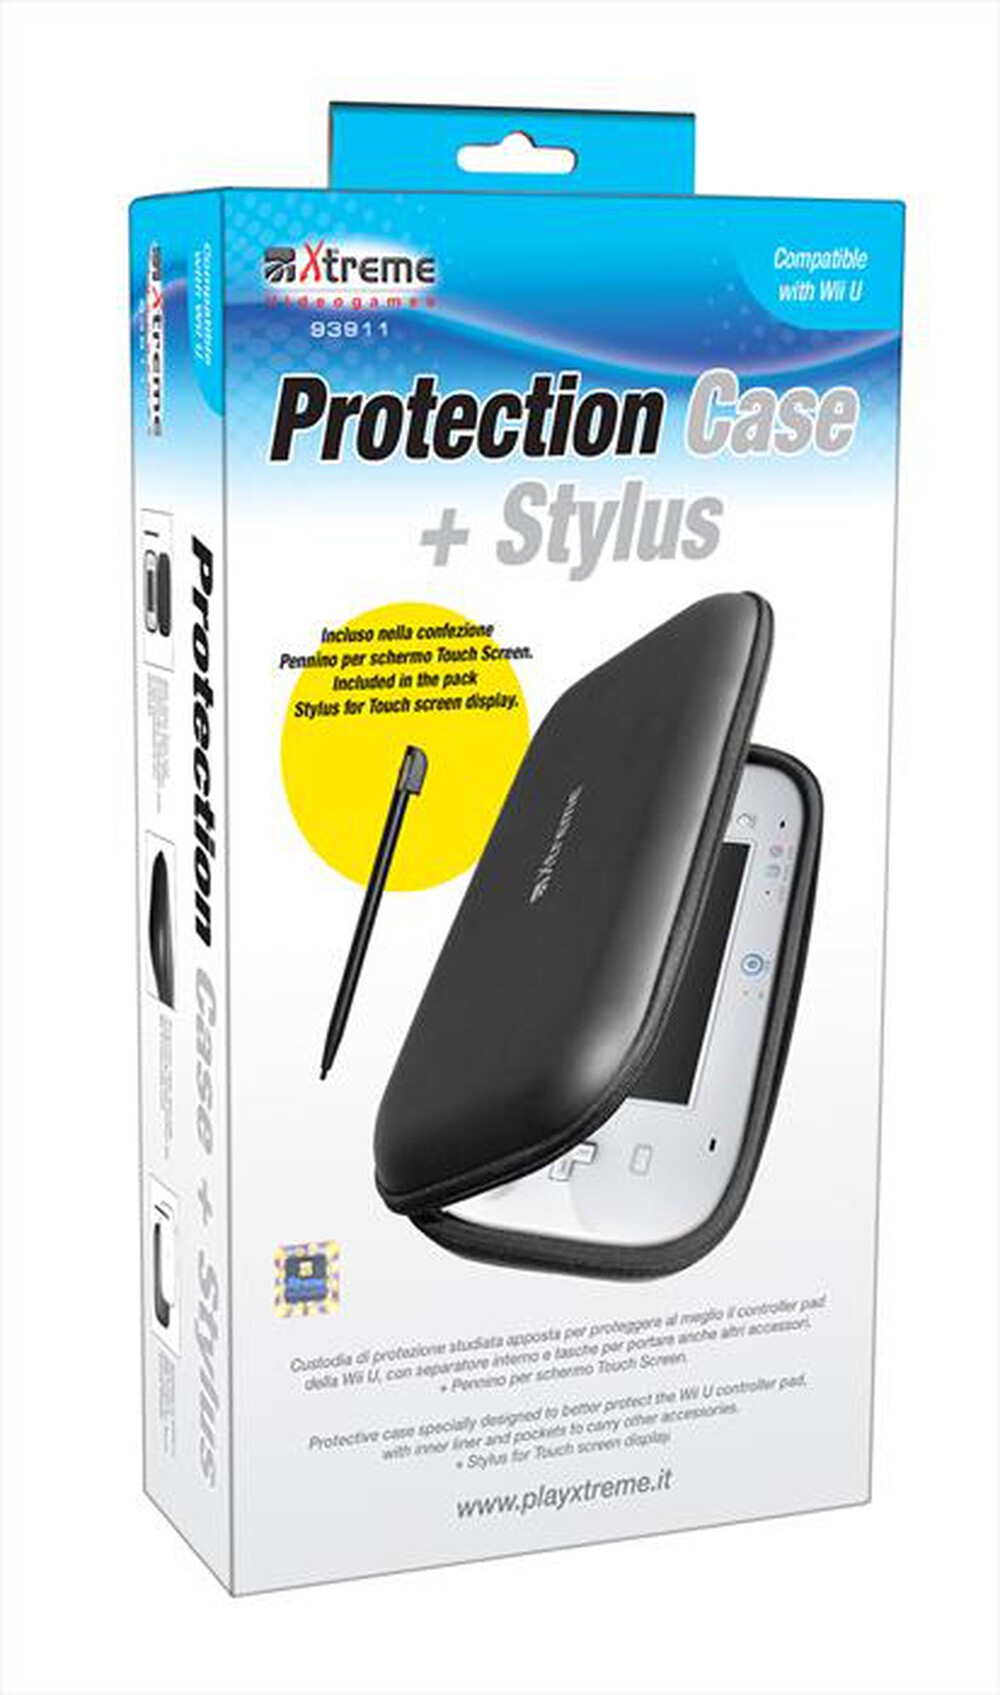 "XTREME - 93911 - Wii-U Protection Case+Stylus"